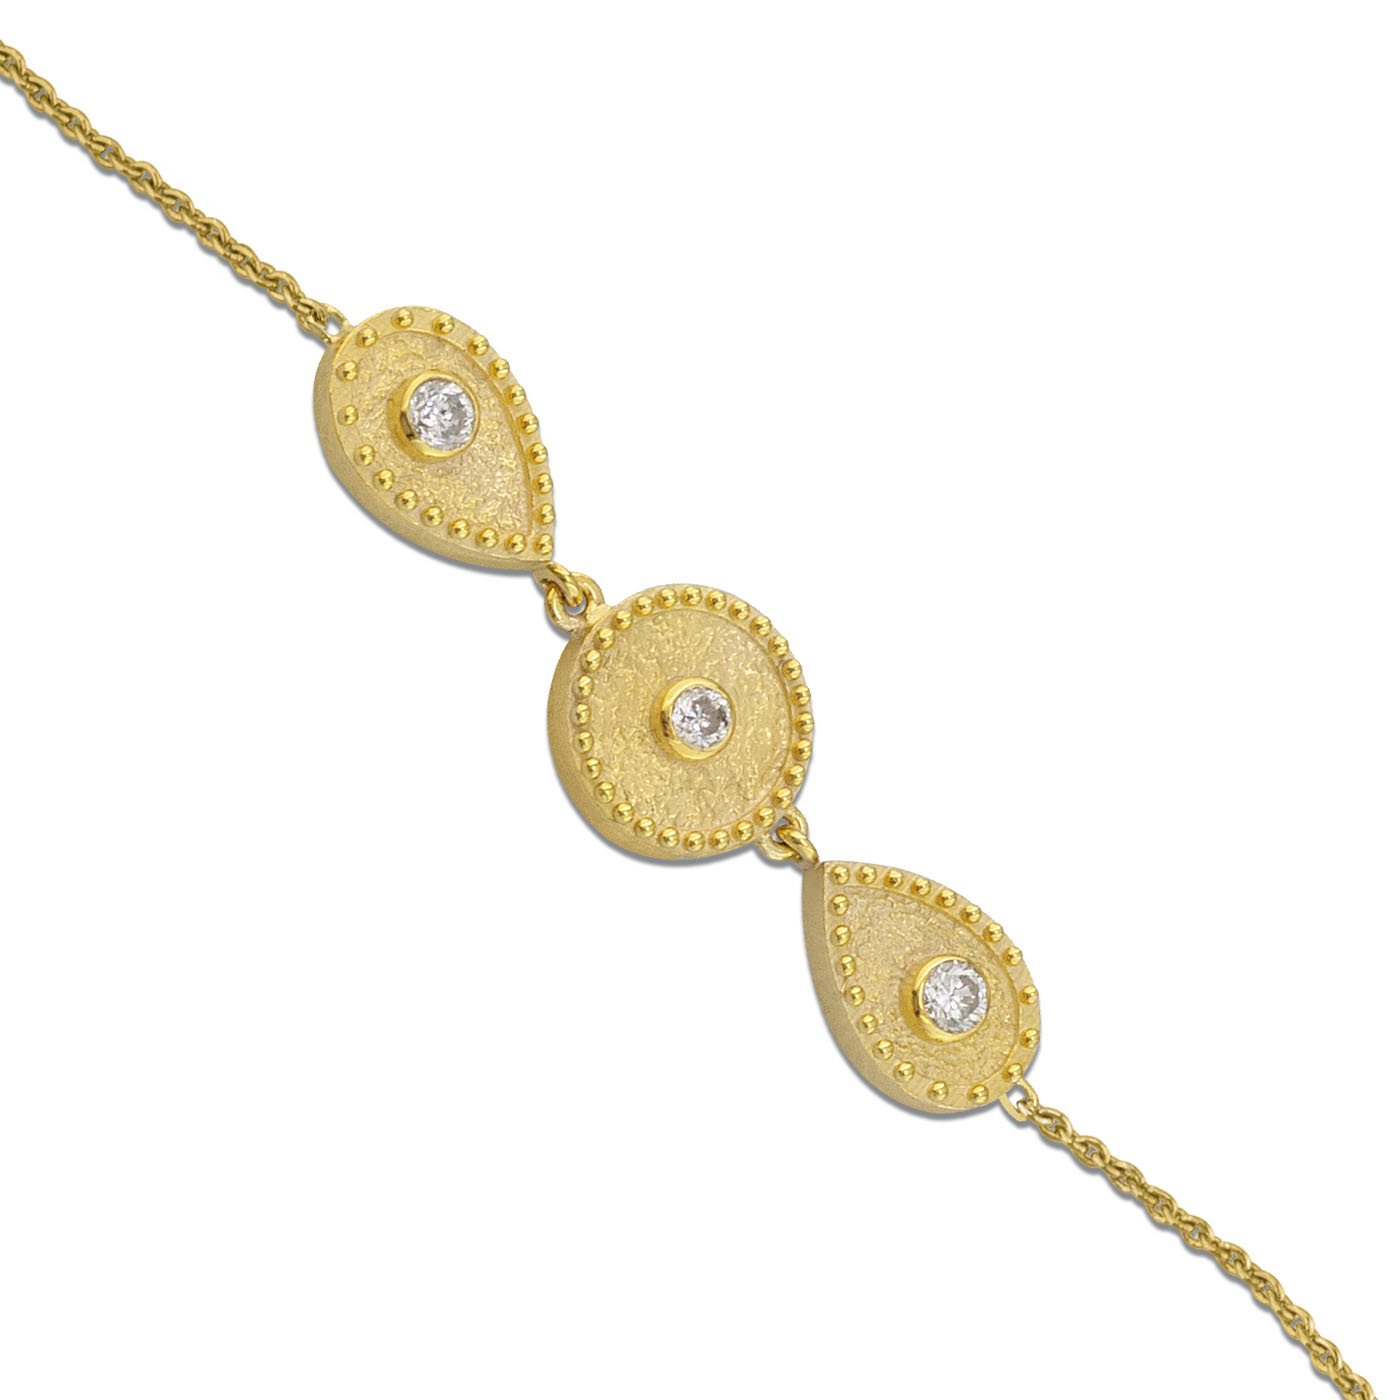 Gold geometric bracelet with diamonds